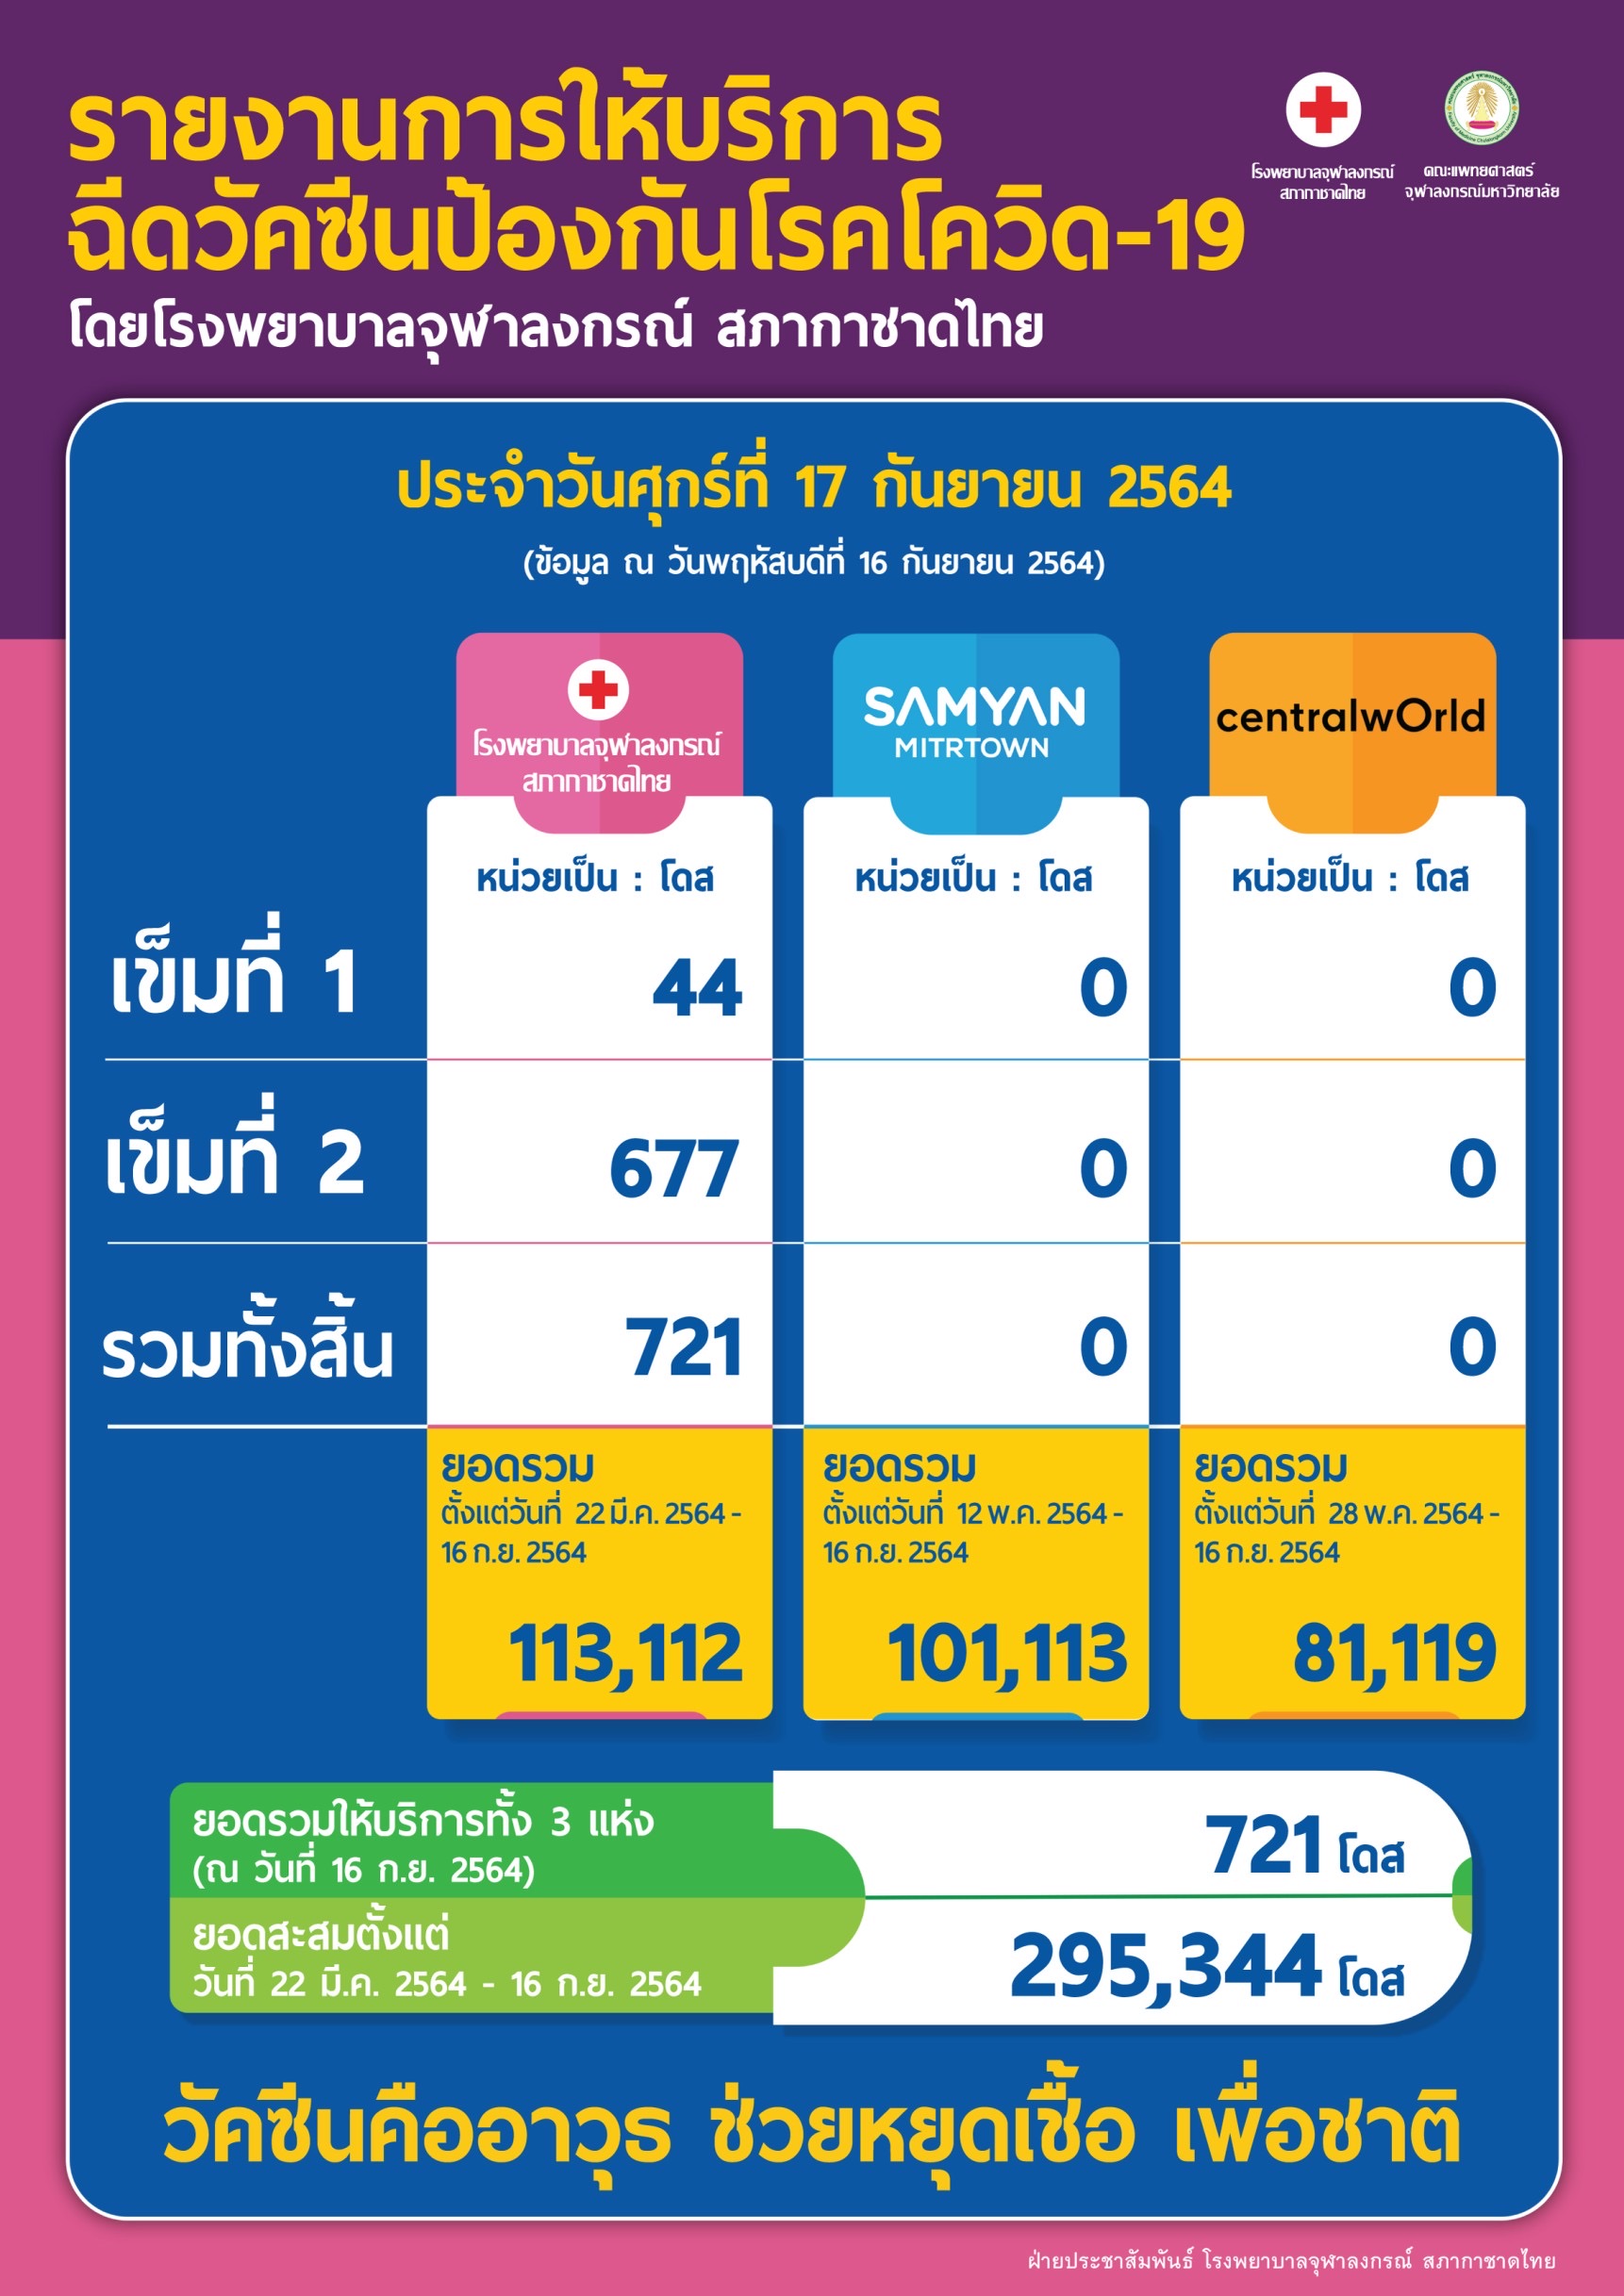 รายงานการให้บริการ ฉีดวัคซีนป้องกันโรคโควิด-19 โดยโรงพยาบาลจุฬาลงกรณ์ สภากาชาดไทย ประจำวันศุกร์ที่ 17 กันยายน 2564